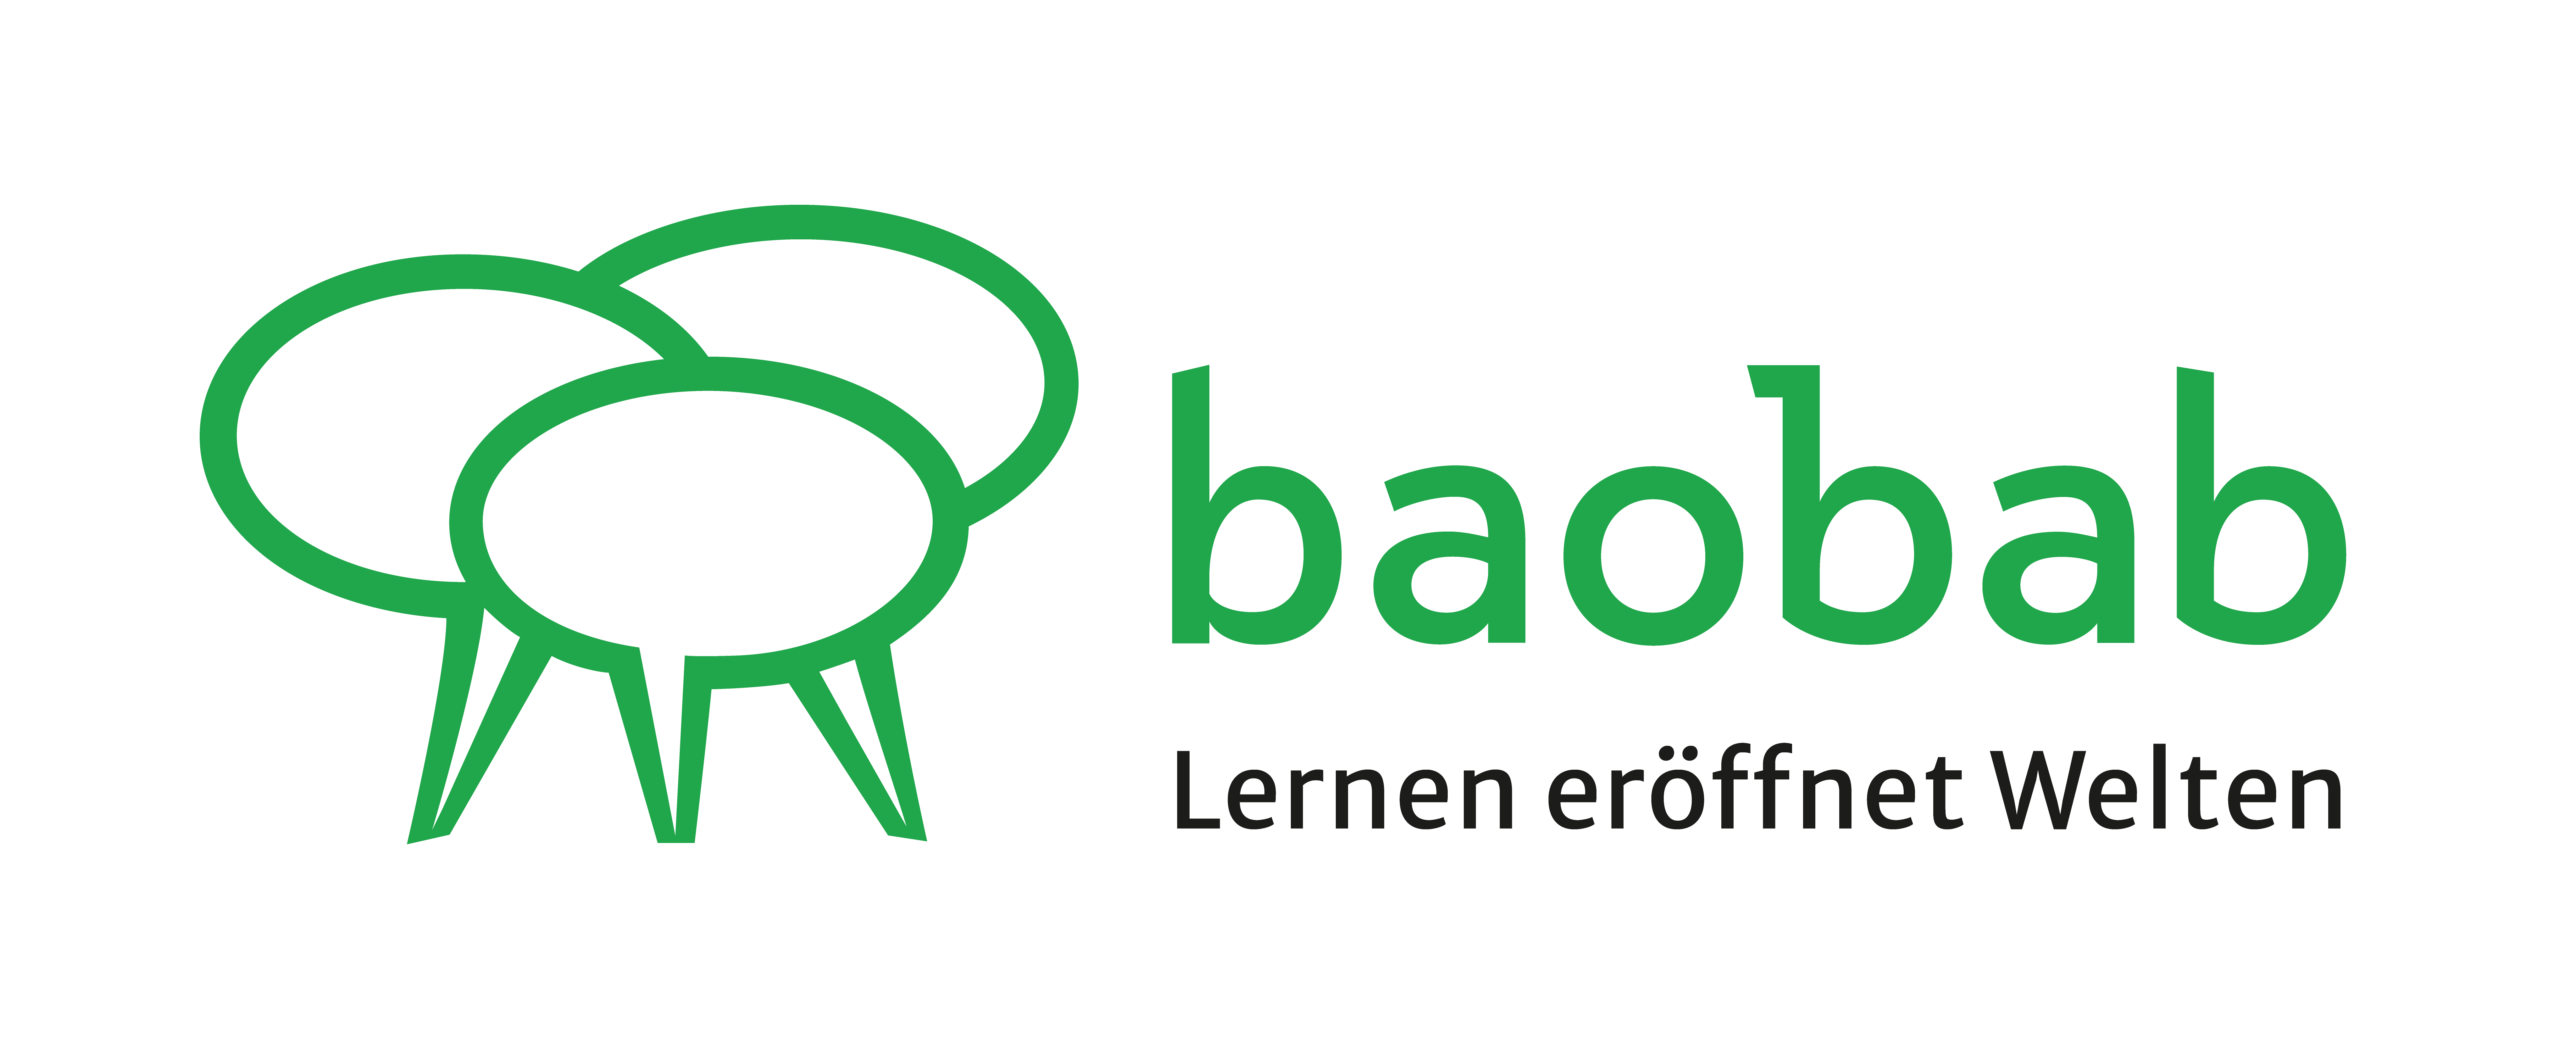 LogoBaobabquer